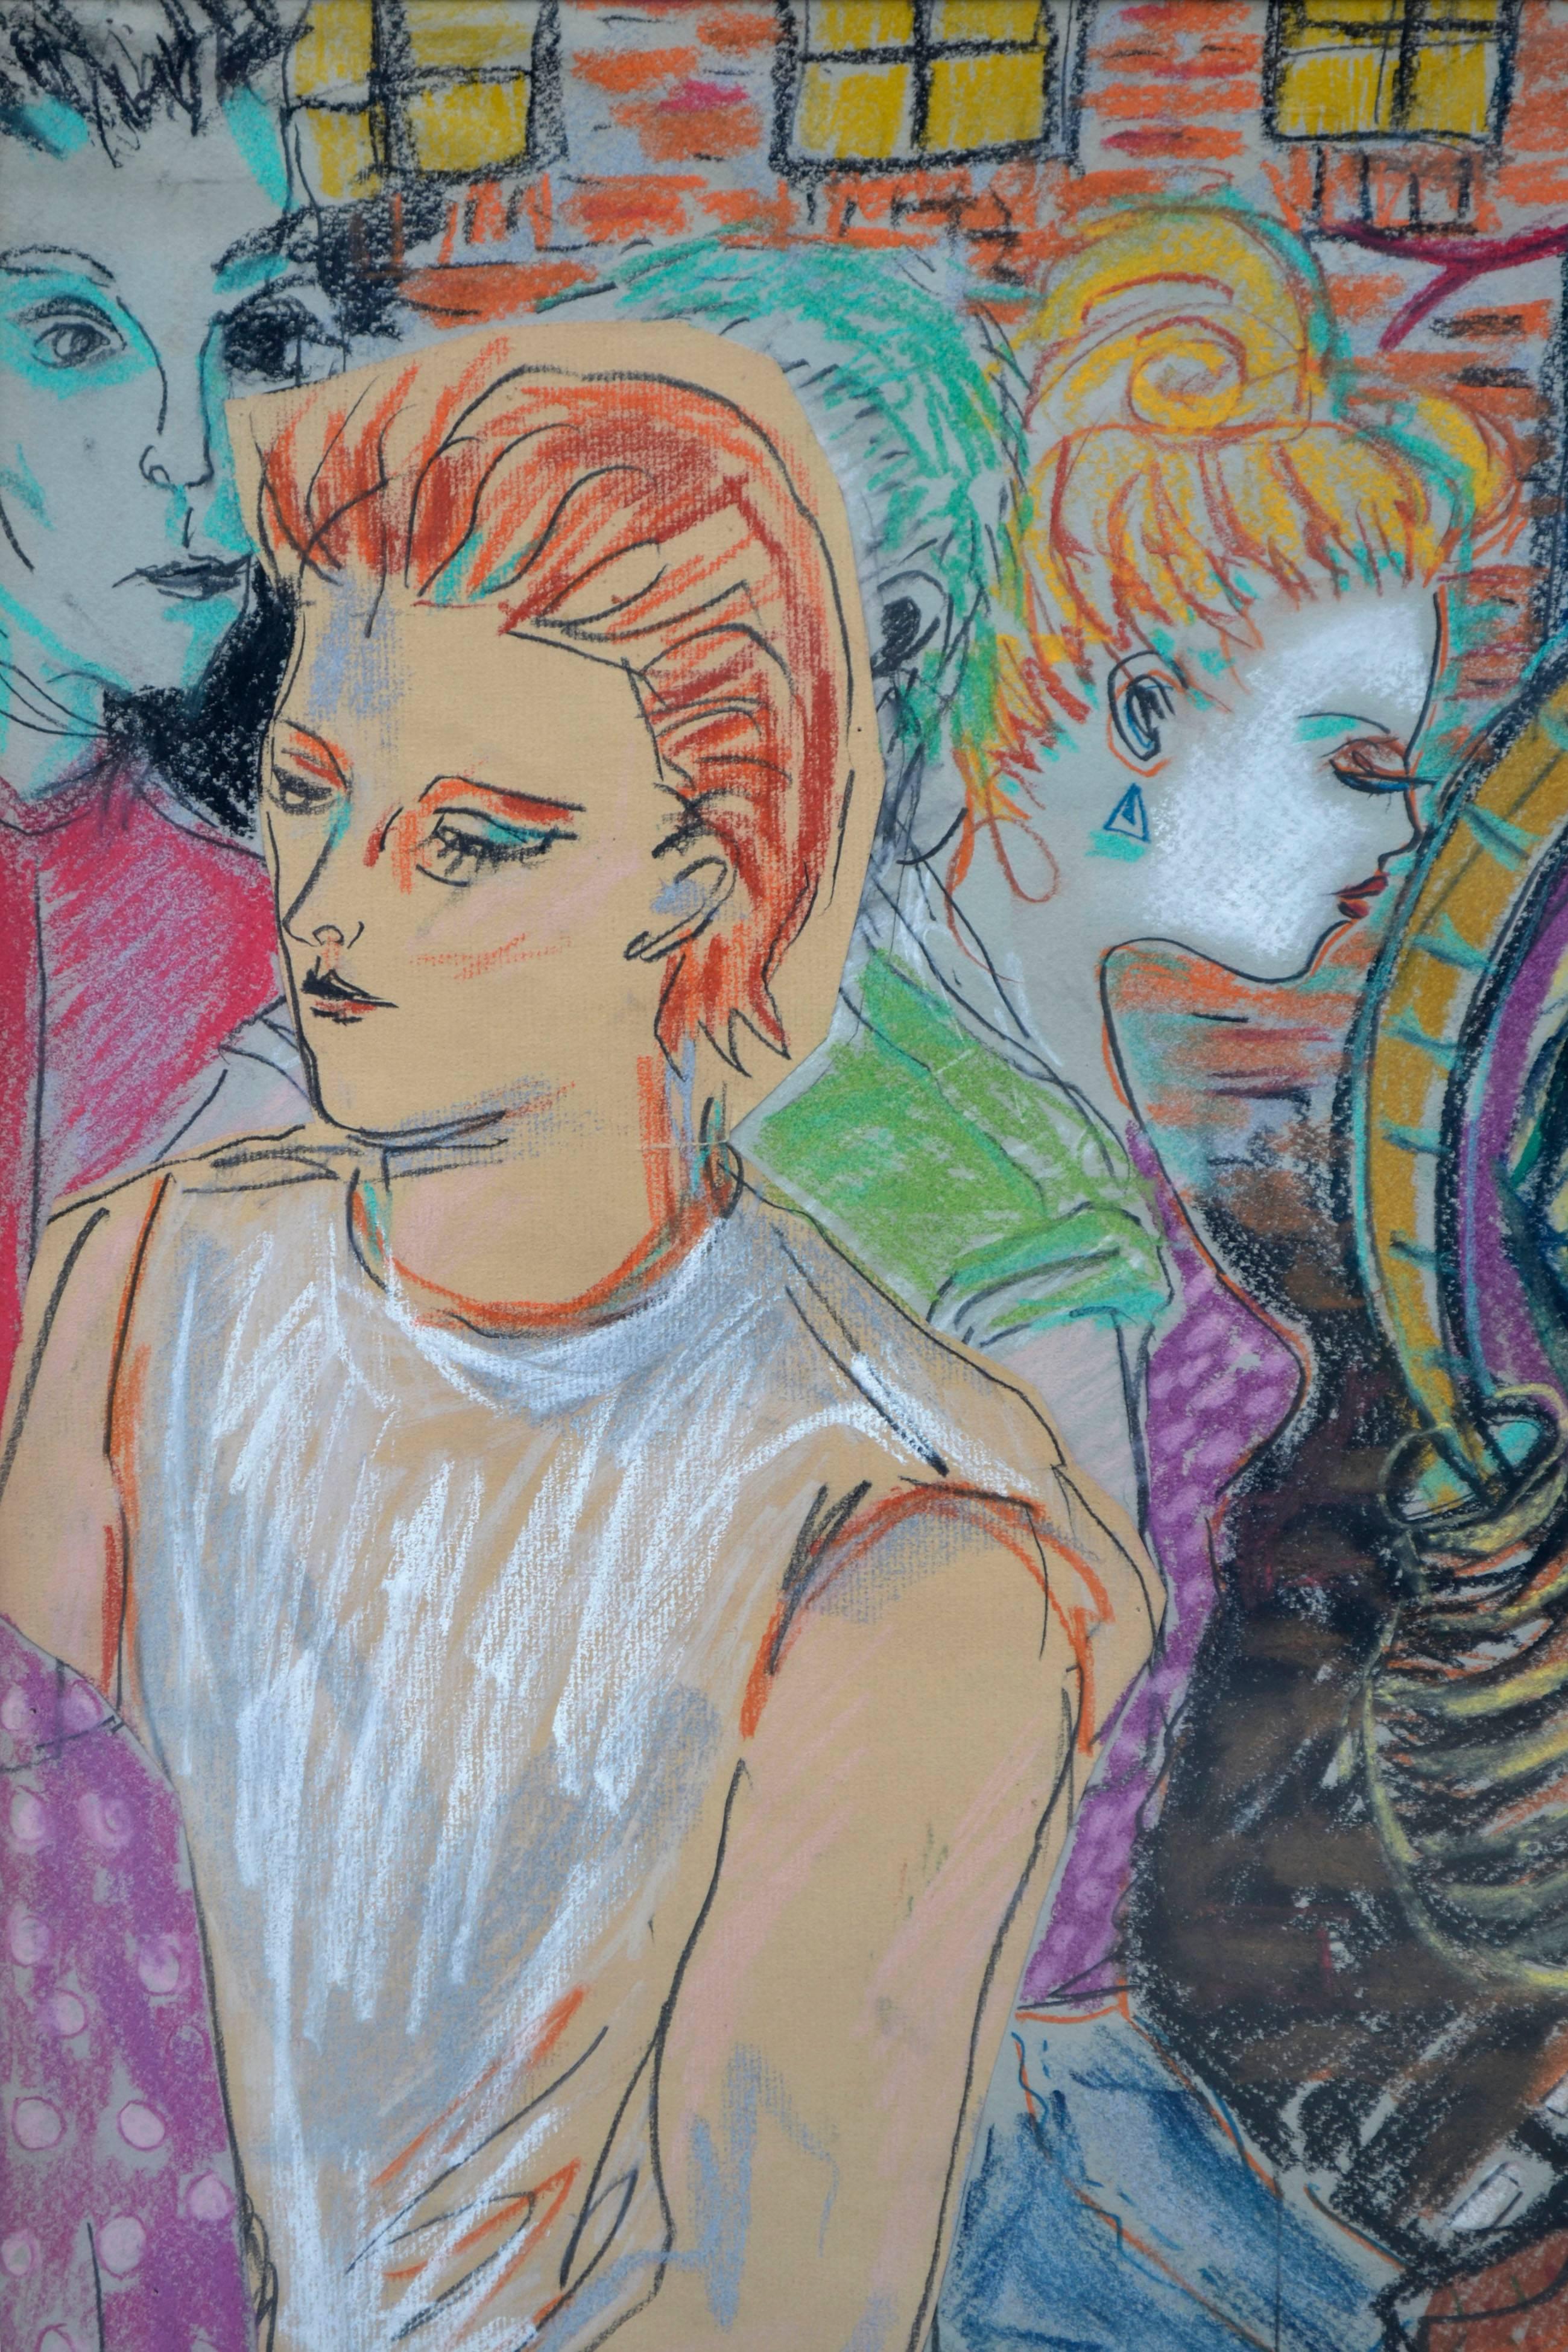 Figurative 1980er Jahre - David Bowie, Iman und Freunde im Angebot 1